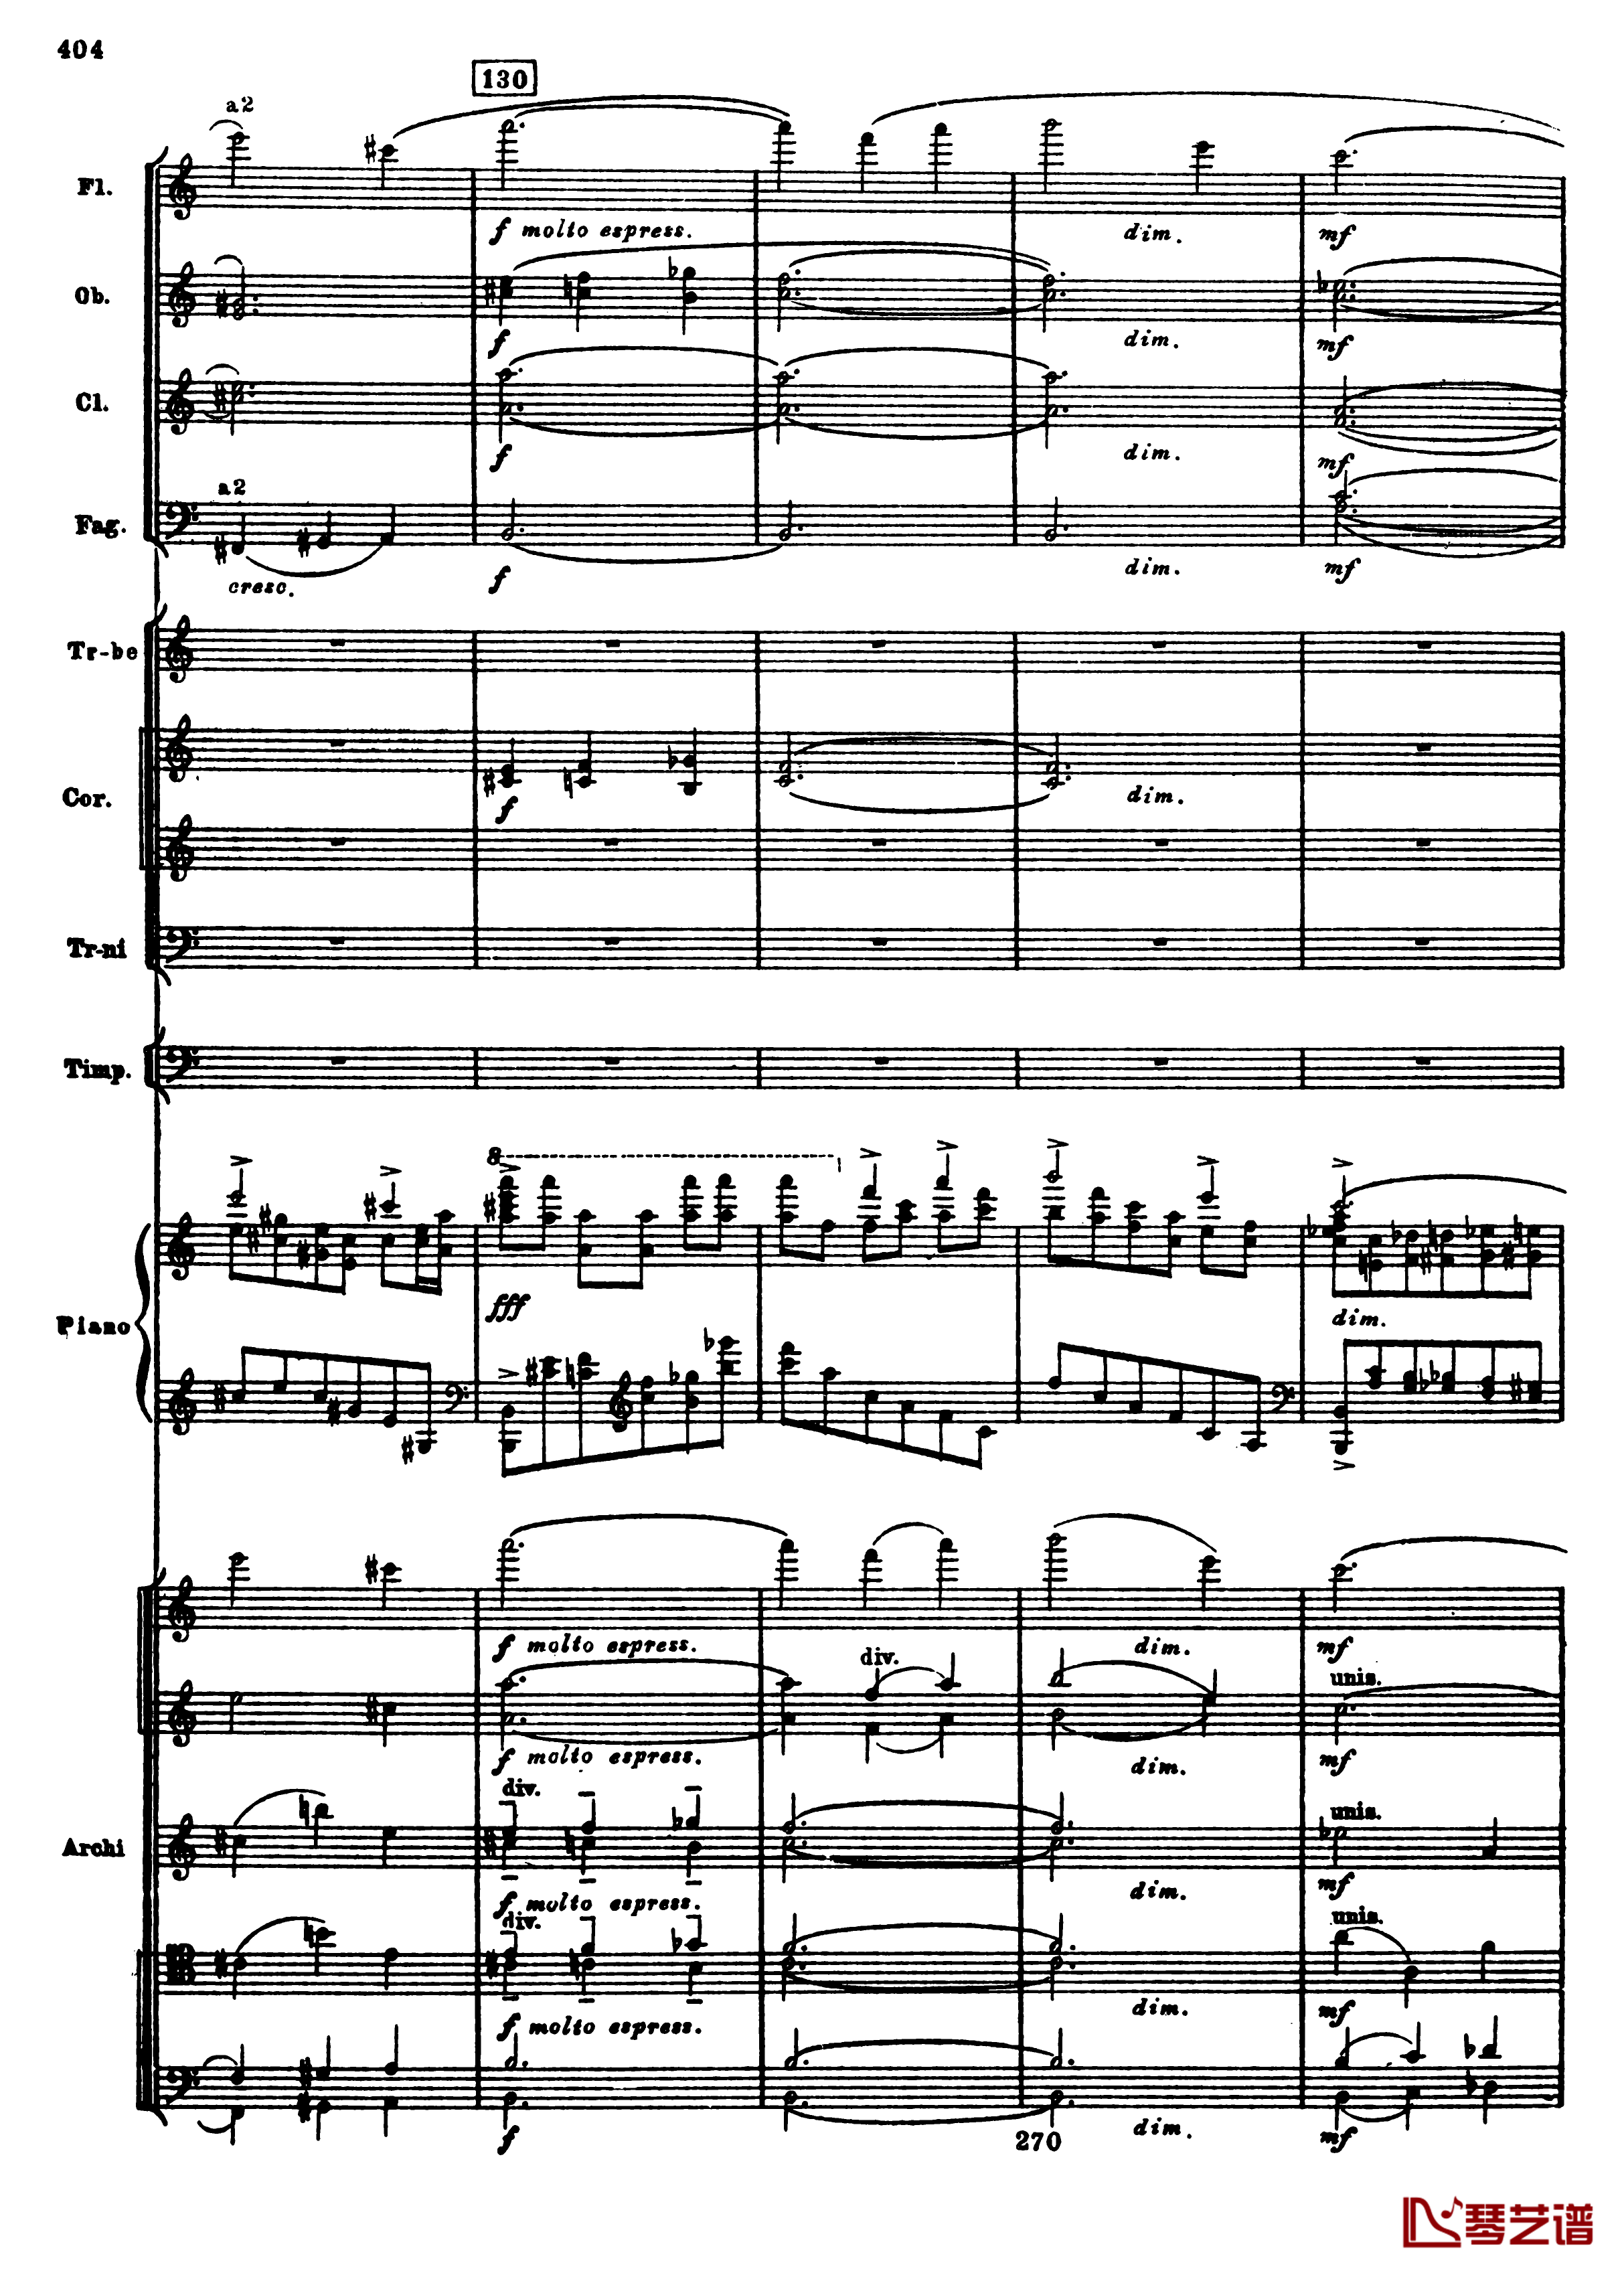 普罗科菲耶夫第三钢琴协奏曲钢琴谱-总谱-普罗科非耶夫136